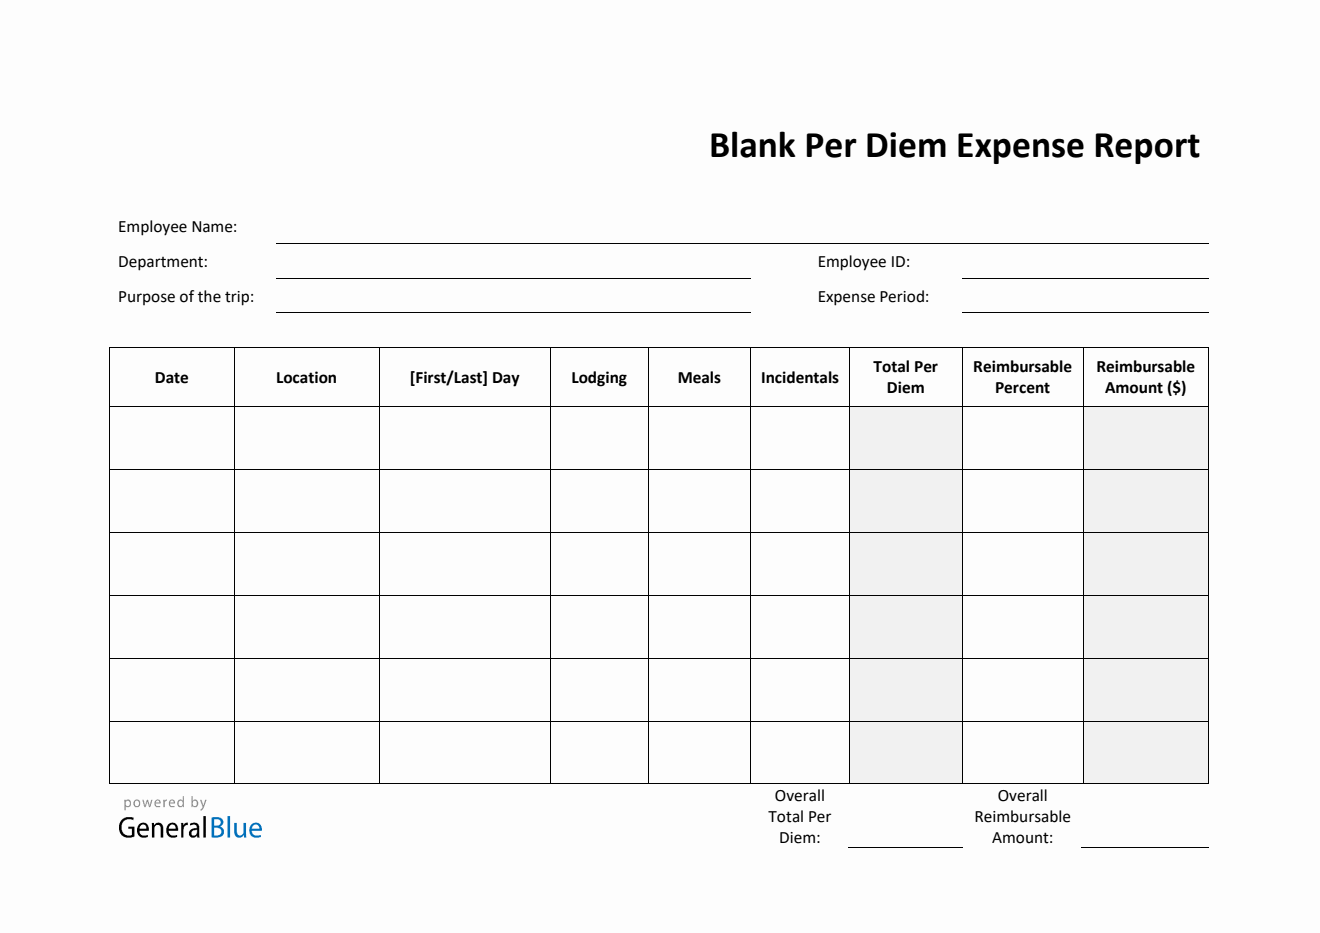 Blank Per Diem Expense Report Template in Word (Printable)